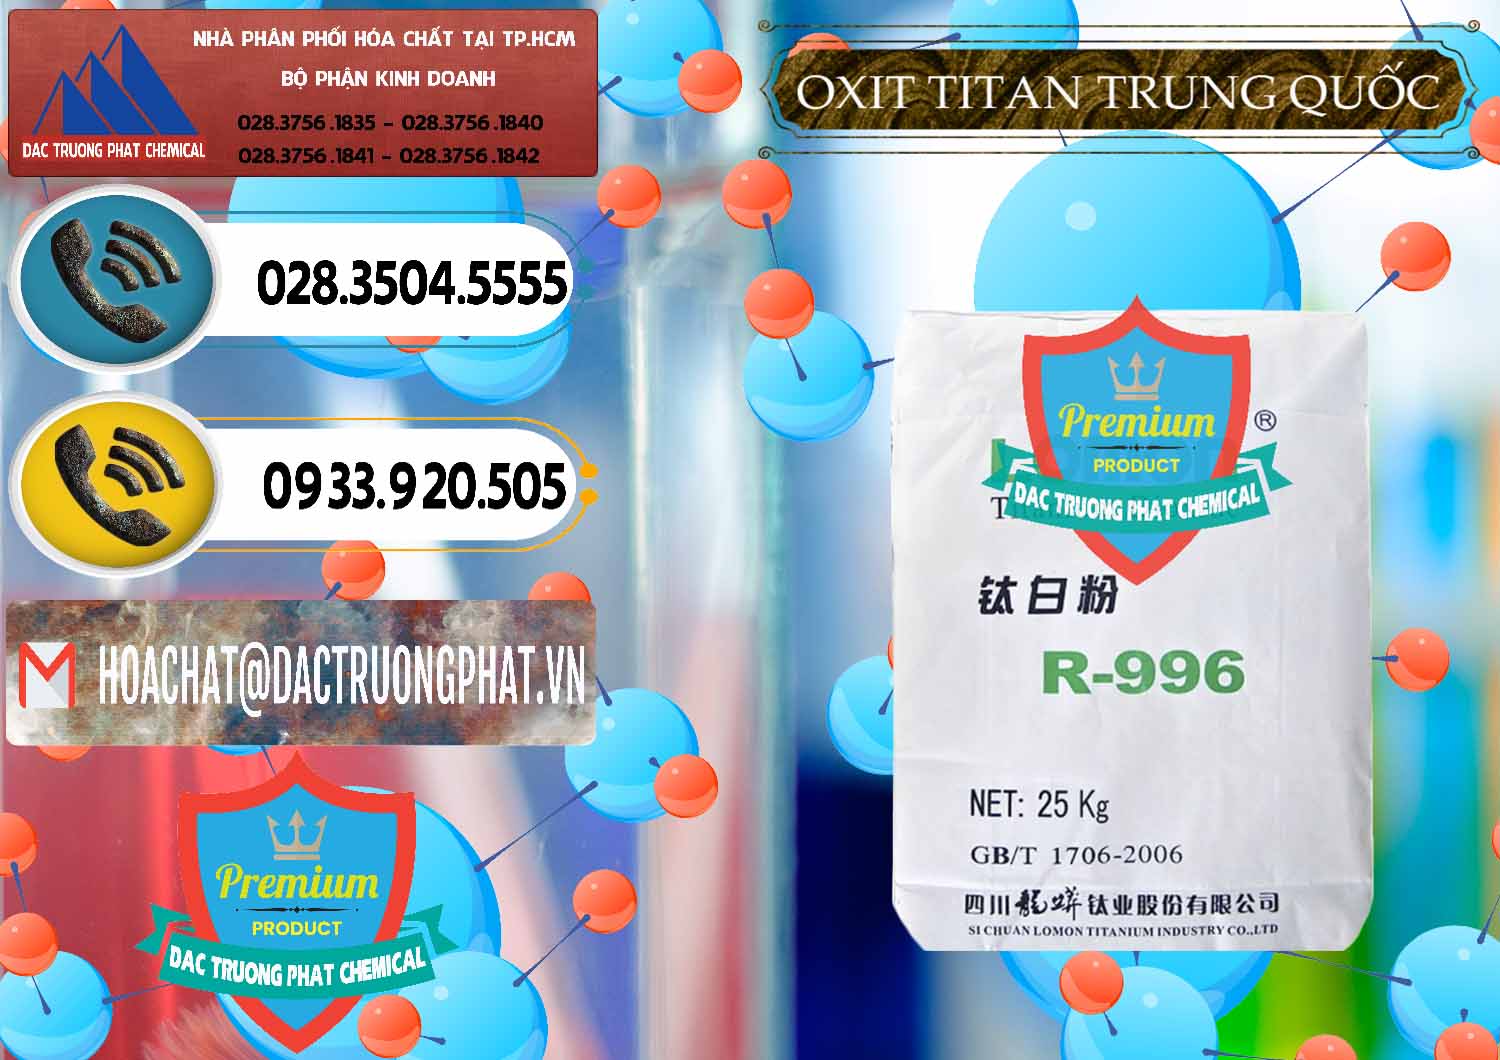 Cty bán & cung ứng Oxit Titan KA100 – Tio2 Trung Quốc China - 0398 - Công ty chuyên nhập khẩu - phân phối hóa chất tại TP.HCM - hoachatdetnhuom.vn